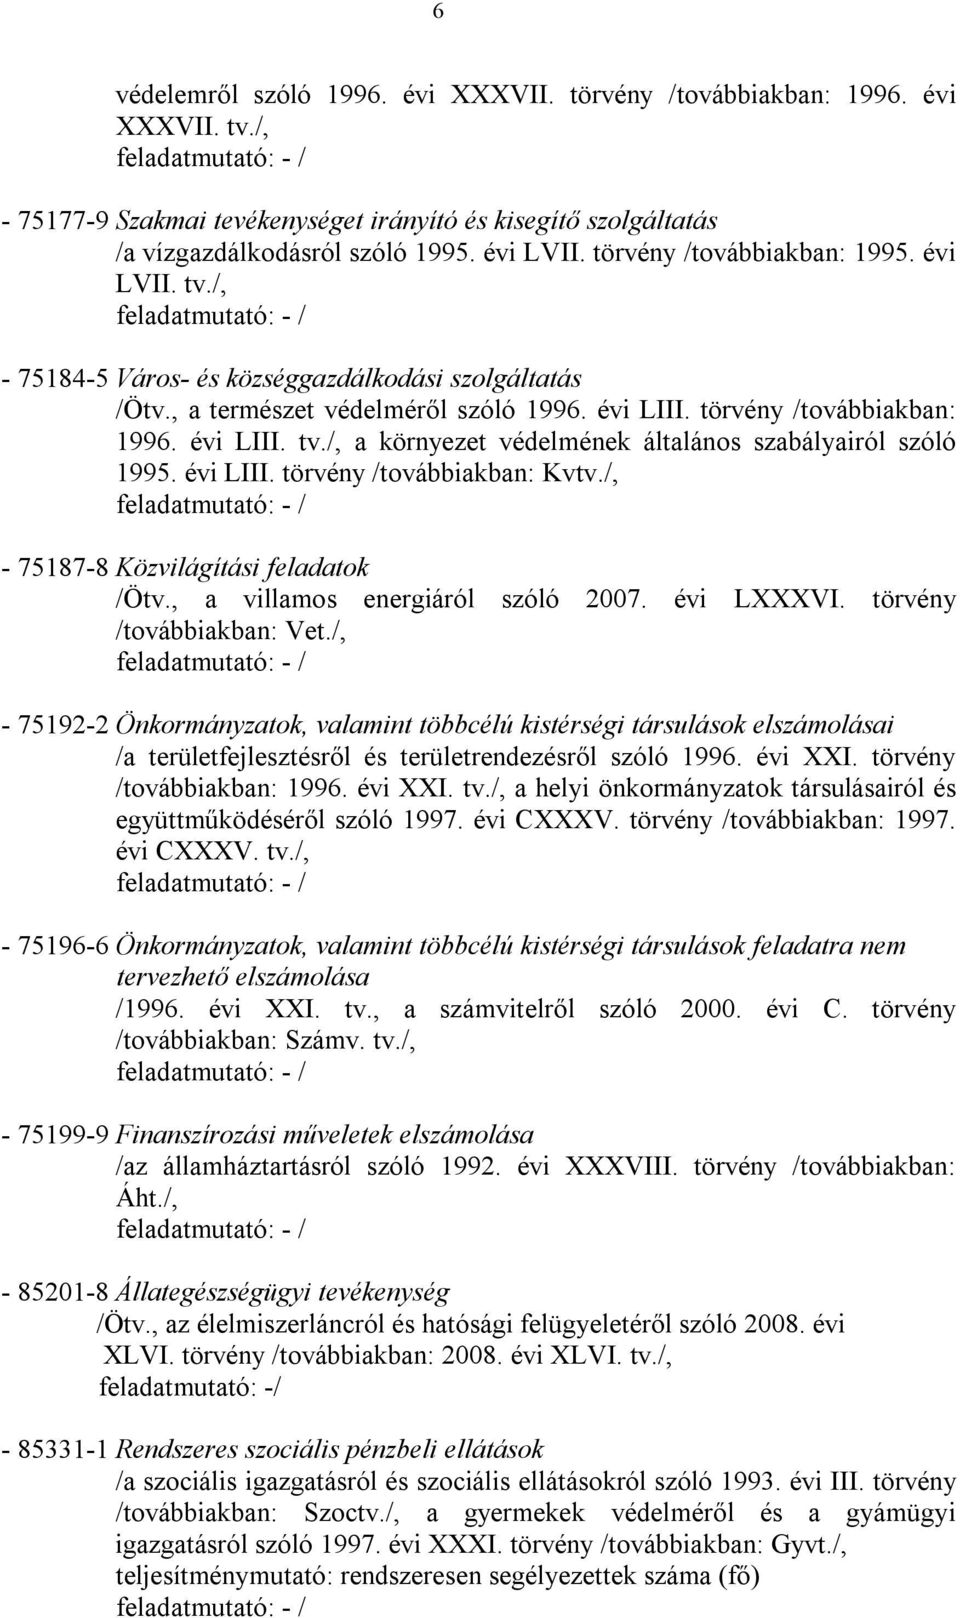 /, feladatmutató: - / - 75184-5 Város- és községgazdálkodási szolgáltatás /Ötv., a természet védelméről szóló 1996. évi LIII. törvény /továbbiakban: 1996. évi LIII. tv.